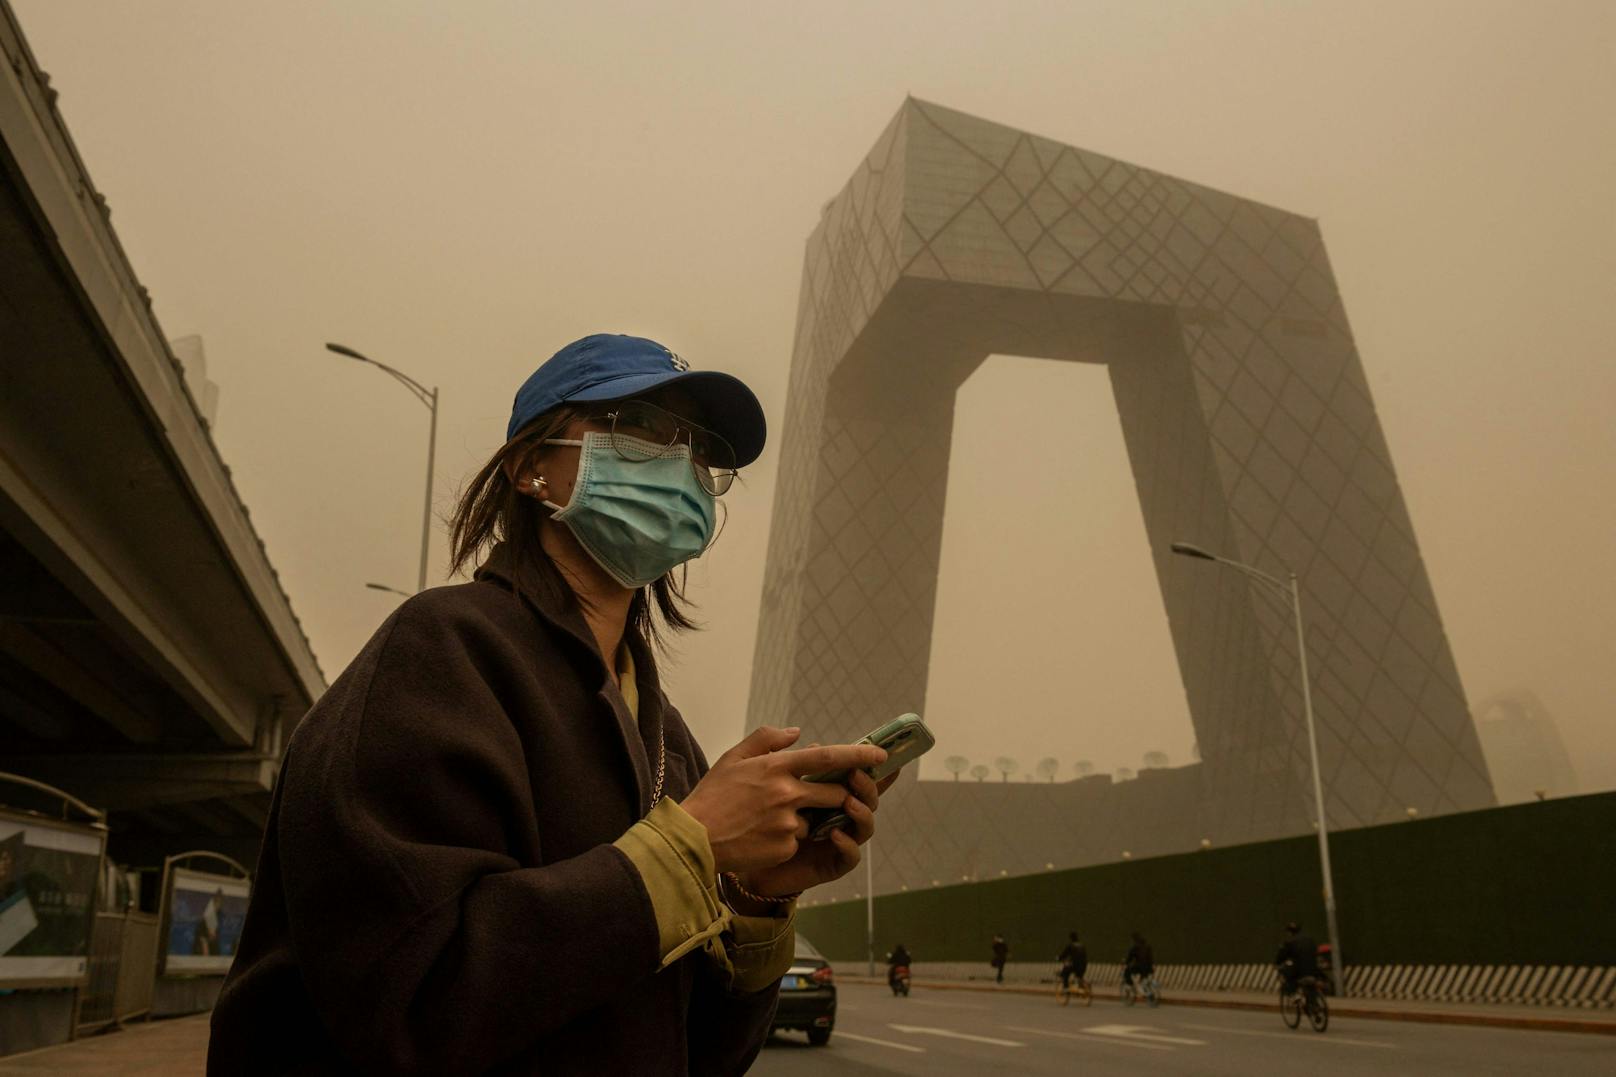 Ein heftiger Sandsturm fegt über China hinweg. In der Hauptstadt Peking verschwinden ganze Hochhäuser in dem orange-gelben Dunst (15. März 2021)